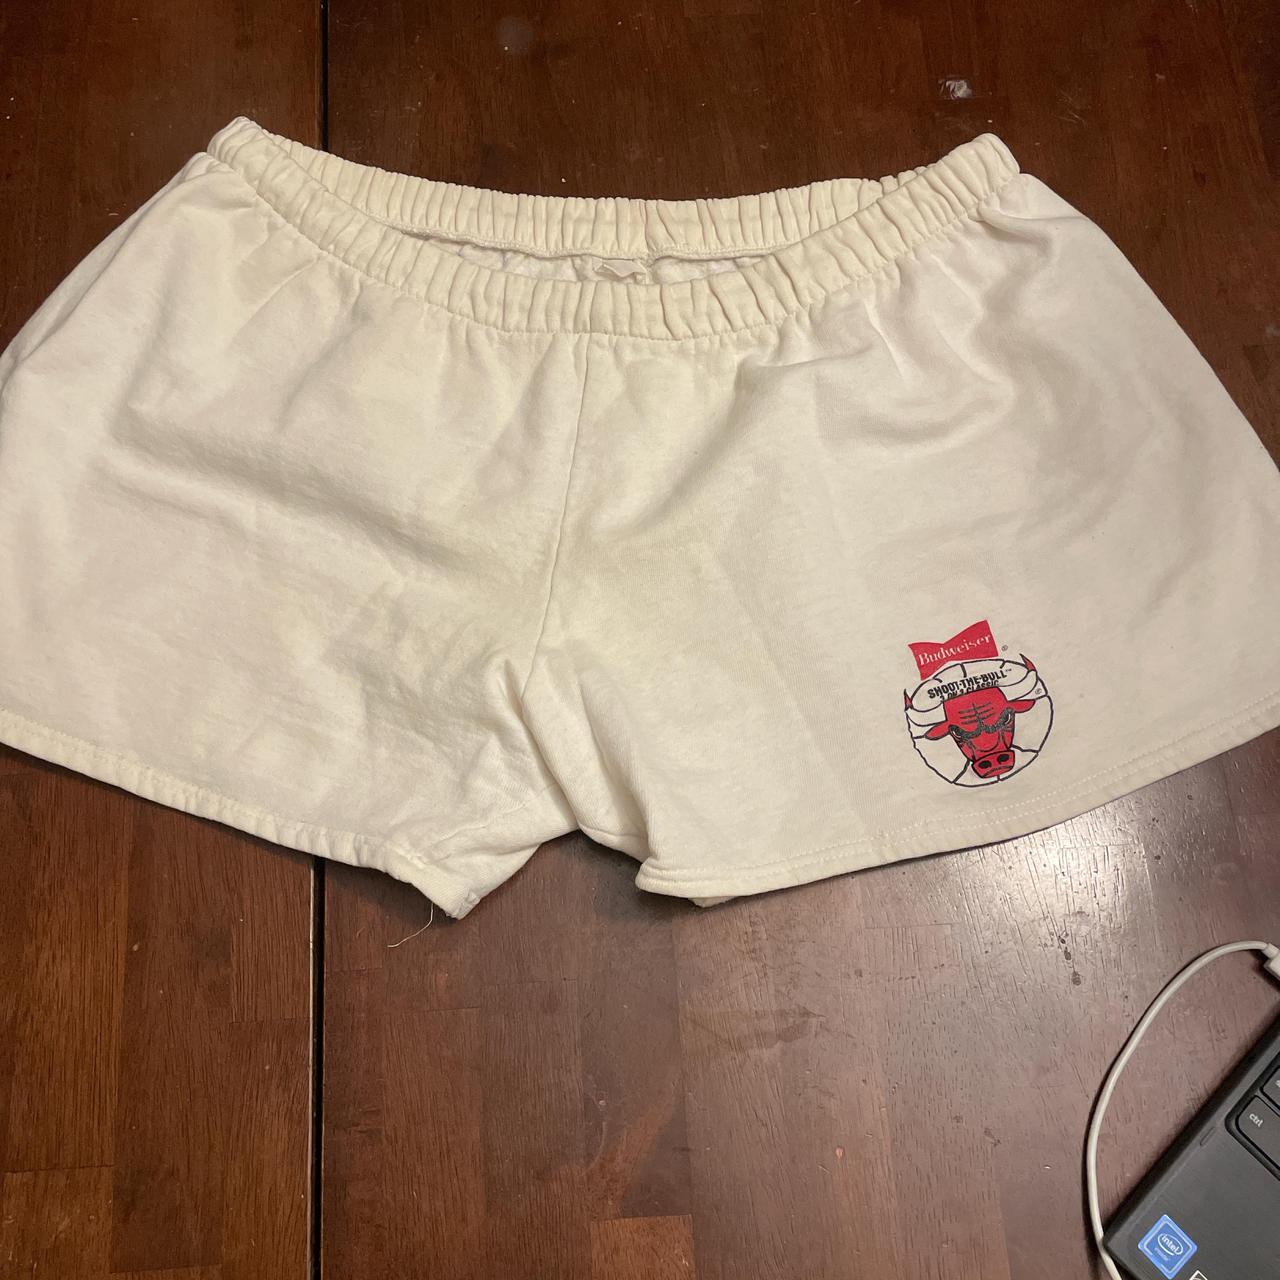 Vintage shorts - Depop